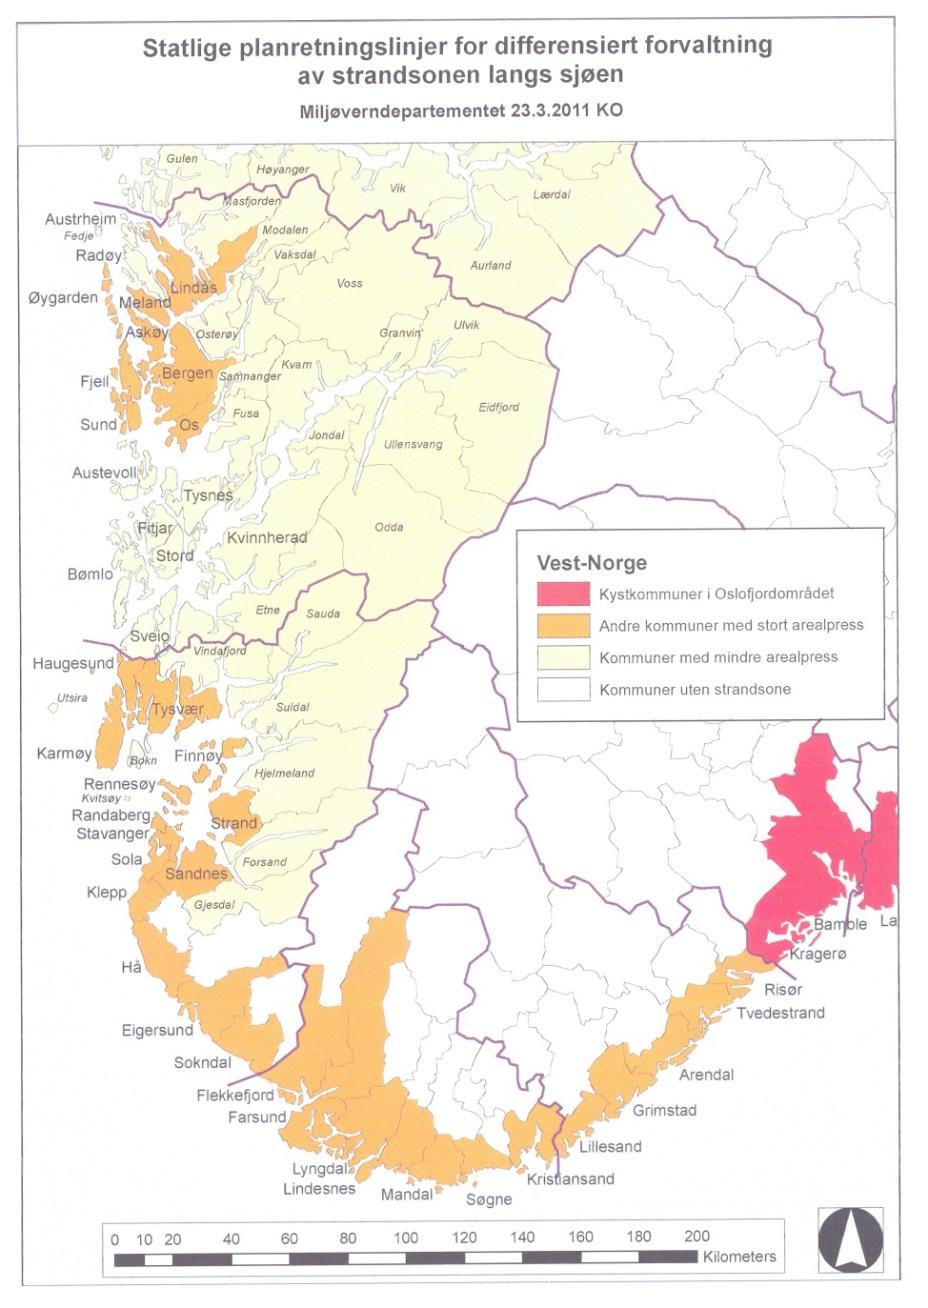 21 Sone 2 omfatter alle kystkommunene i begge agderfylkene, samt kommuner i Rogaland, Hordaland og Møre og Romsdal, samt de to trøndelagsfylkene (se også avsnitt 6 i retningslinjen).